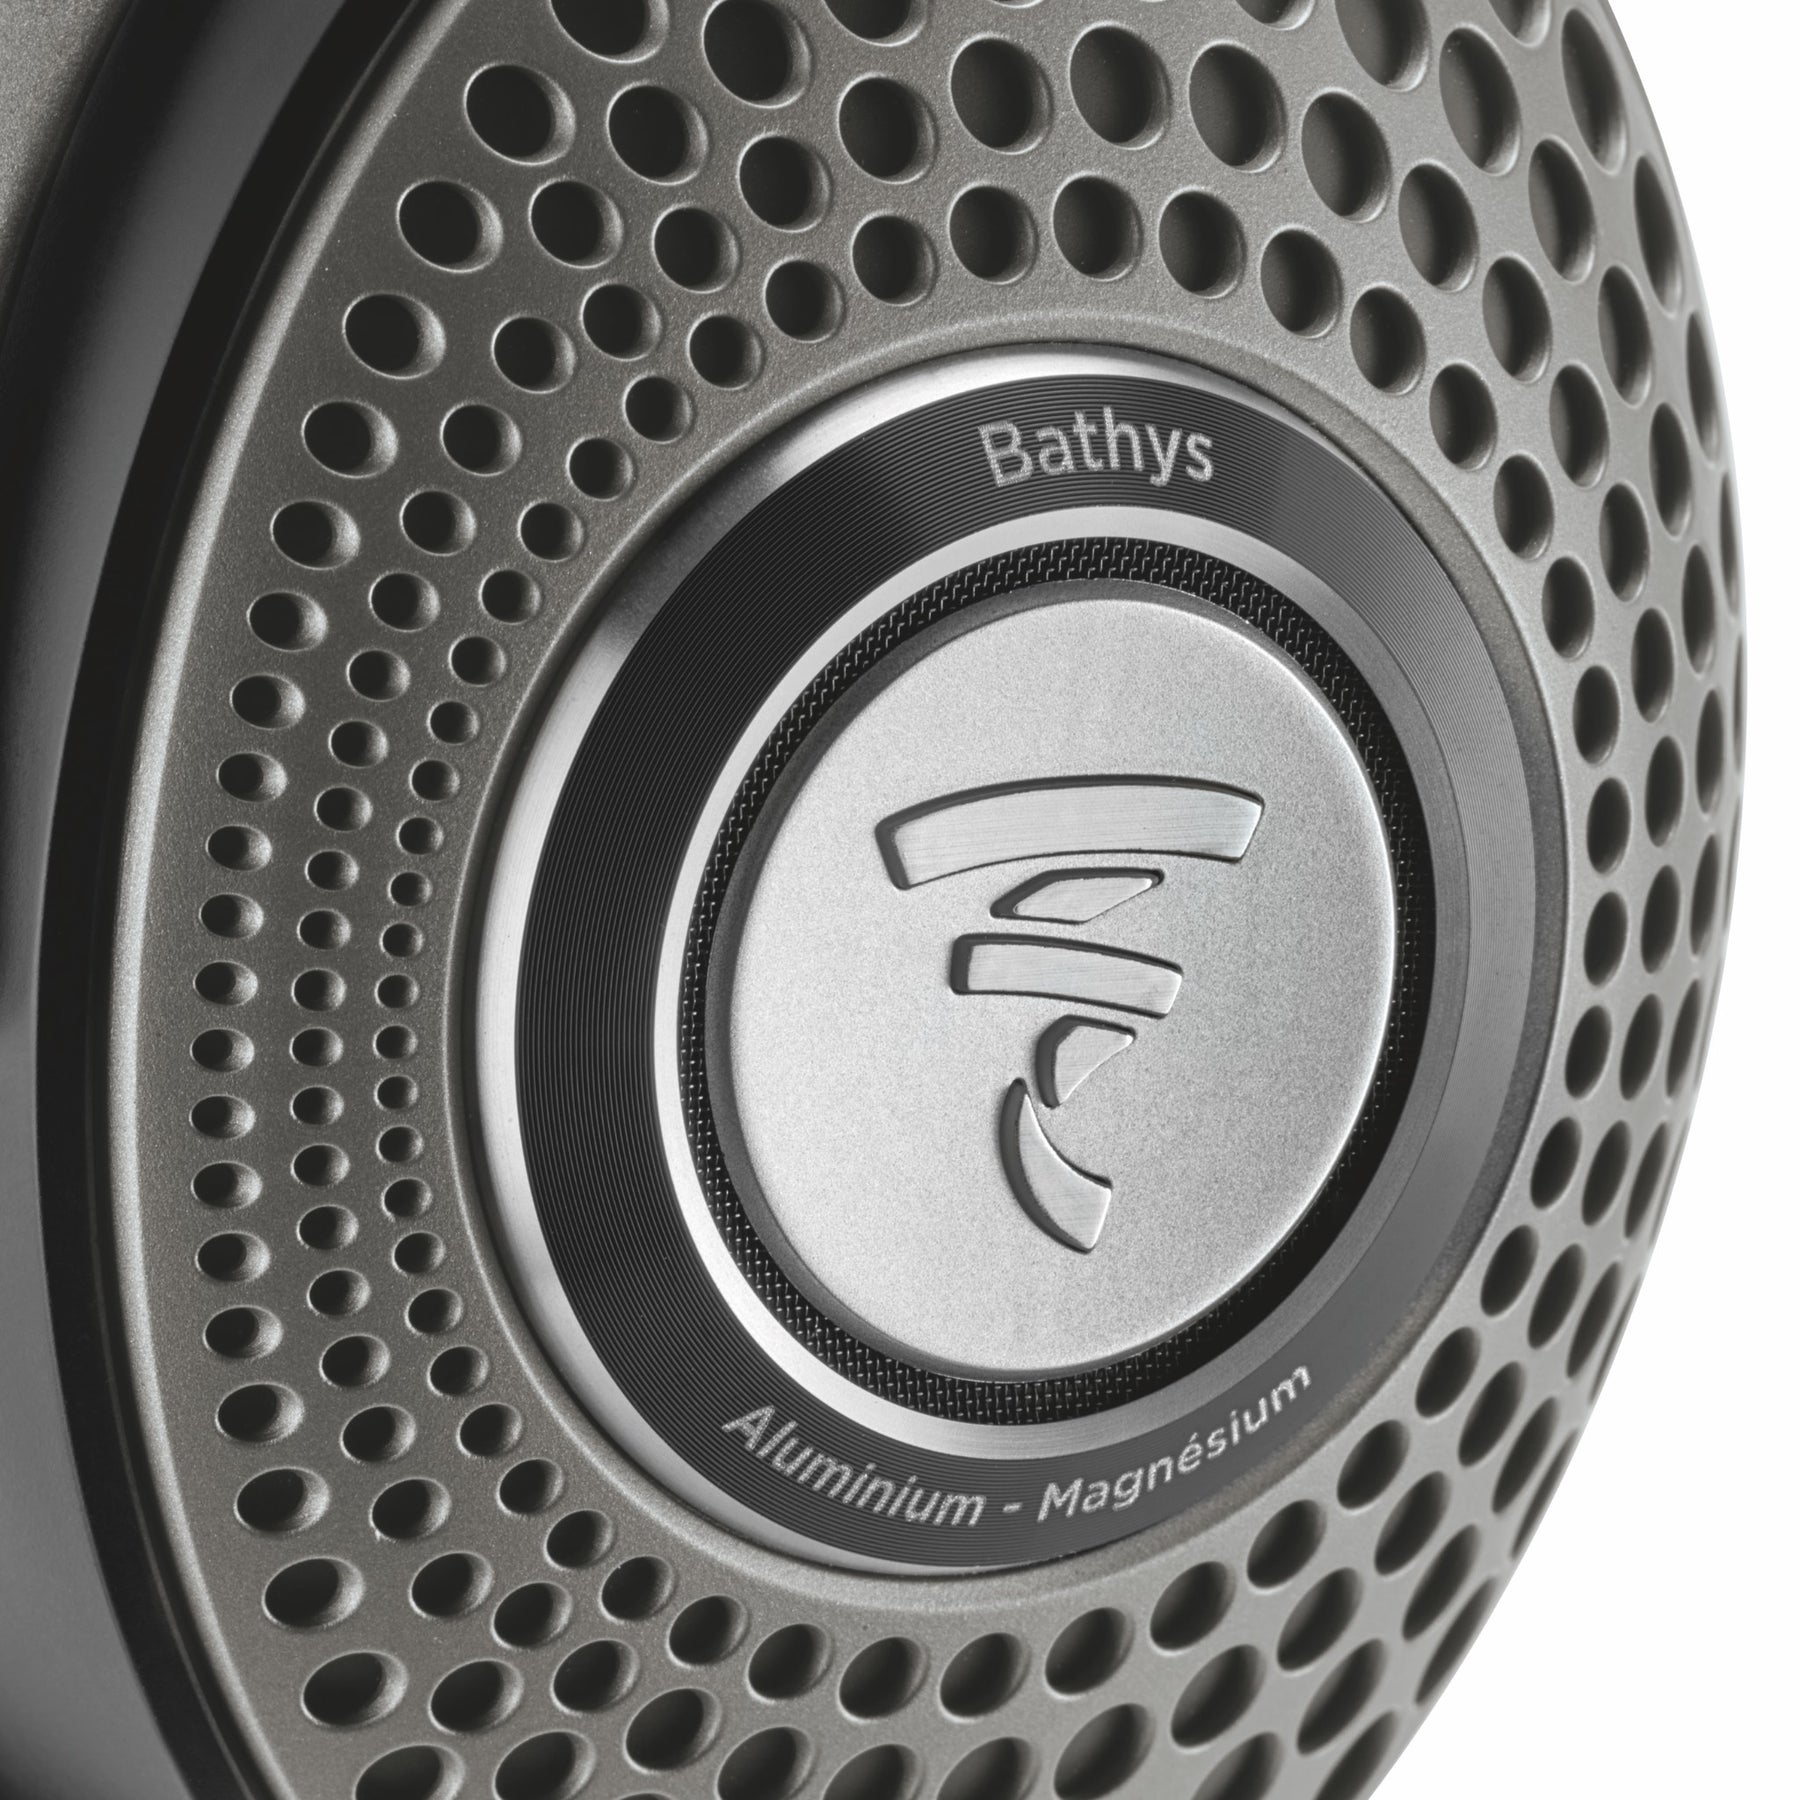 FOCAL BATHYS - esfera audio tienda imagen y sonido